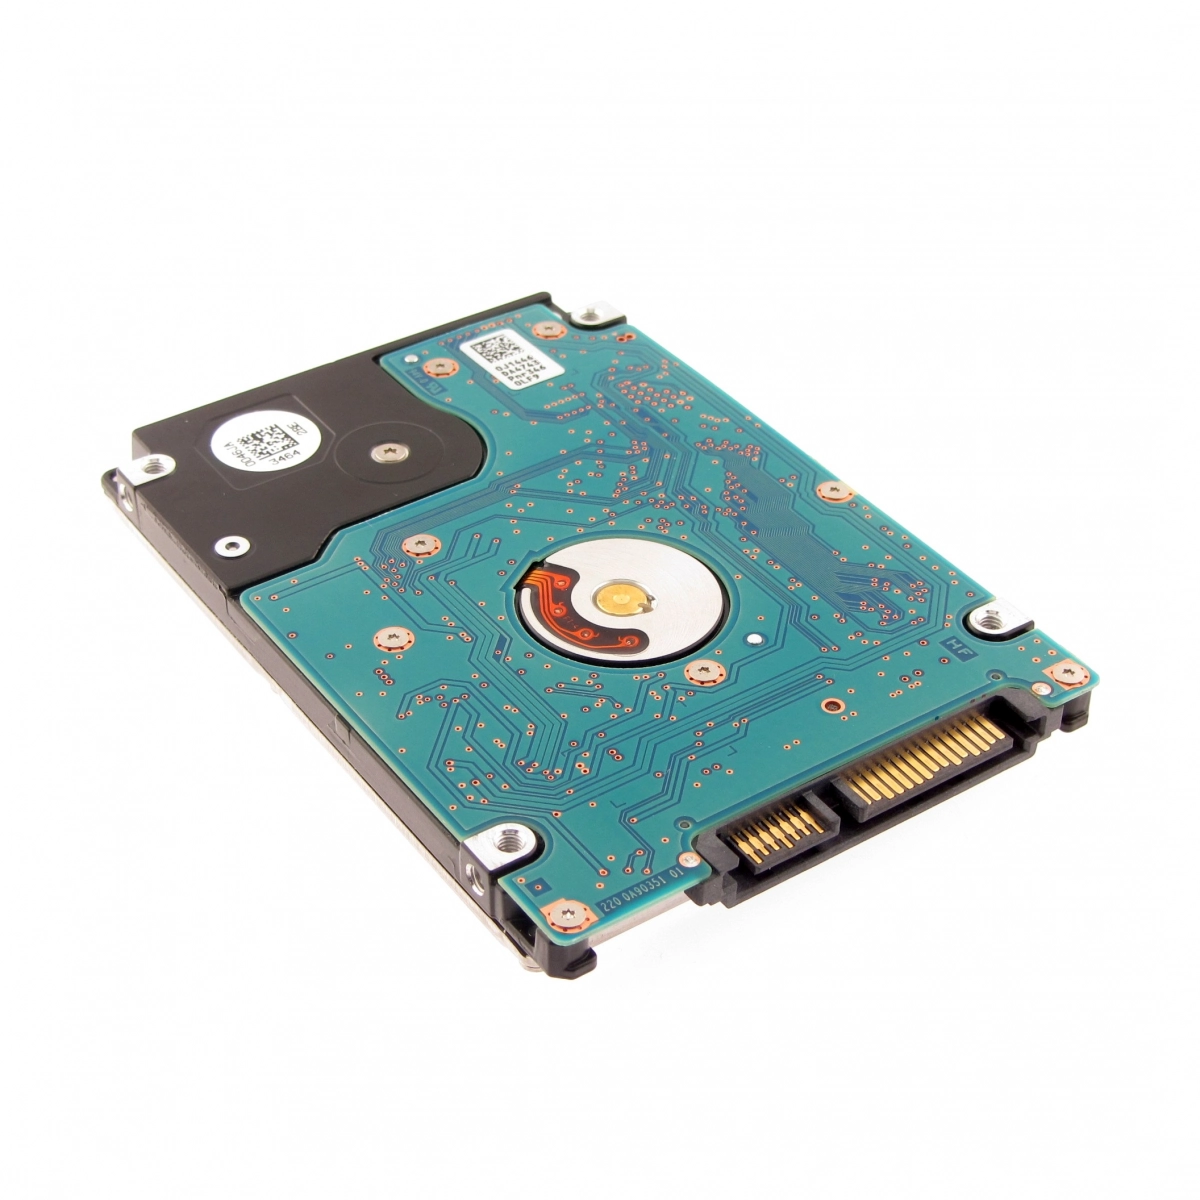 Notebook-Festplatte 500GB, 7200rpm, 128MB für DELL Vostro 3560